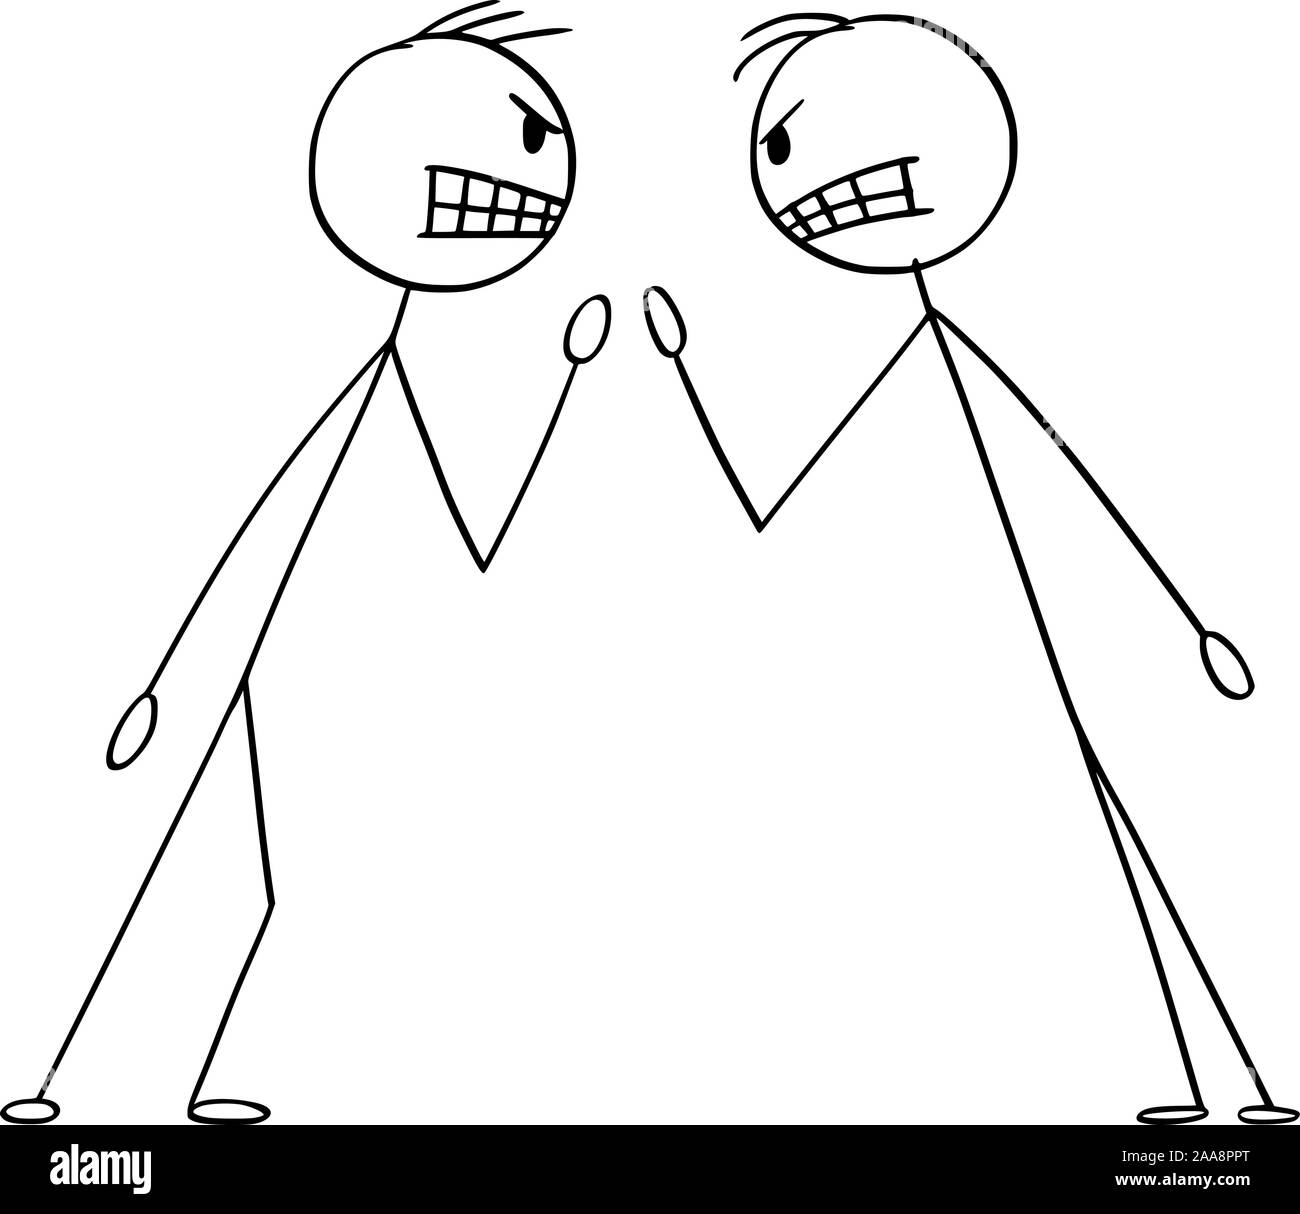 Vector cartoon stick figure dessin illustration conceptuelle de deux hommes en colère ou d'affaires de lutte argument ou disputes. Illustration de Vecteur